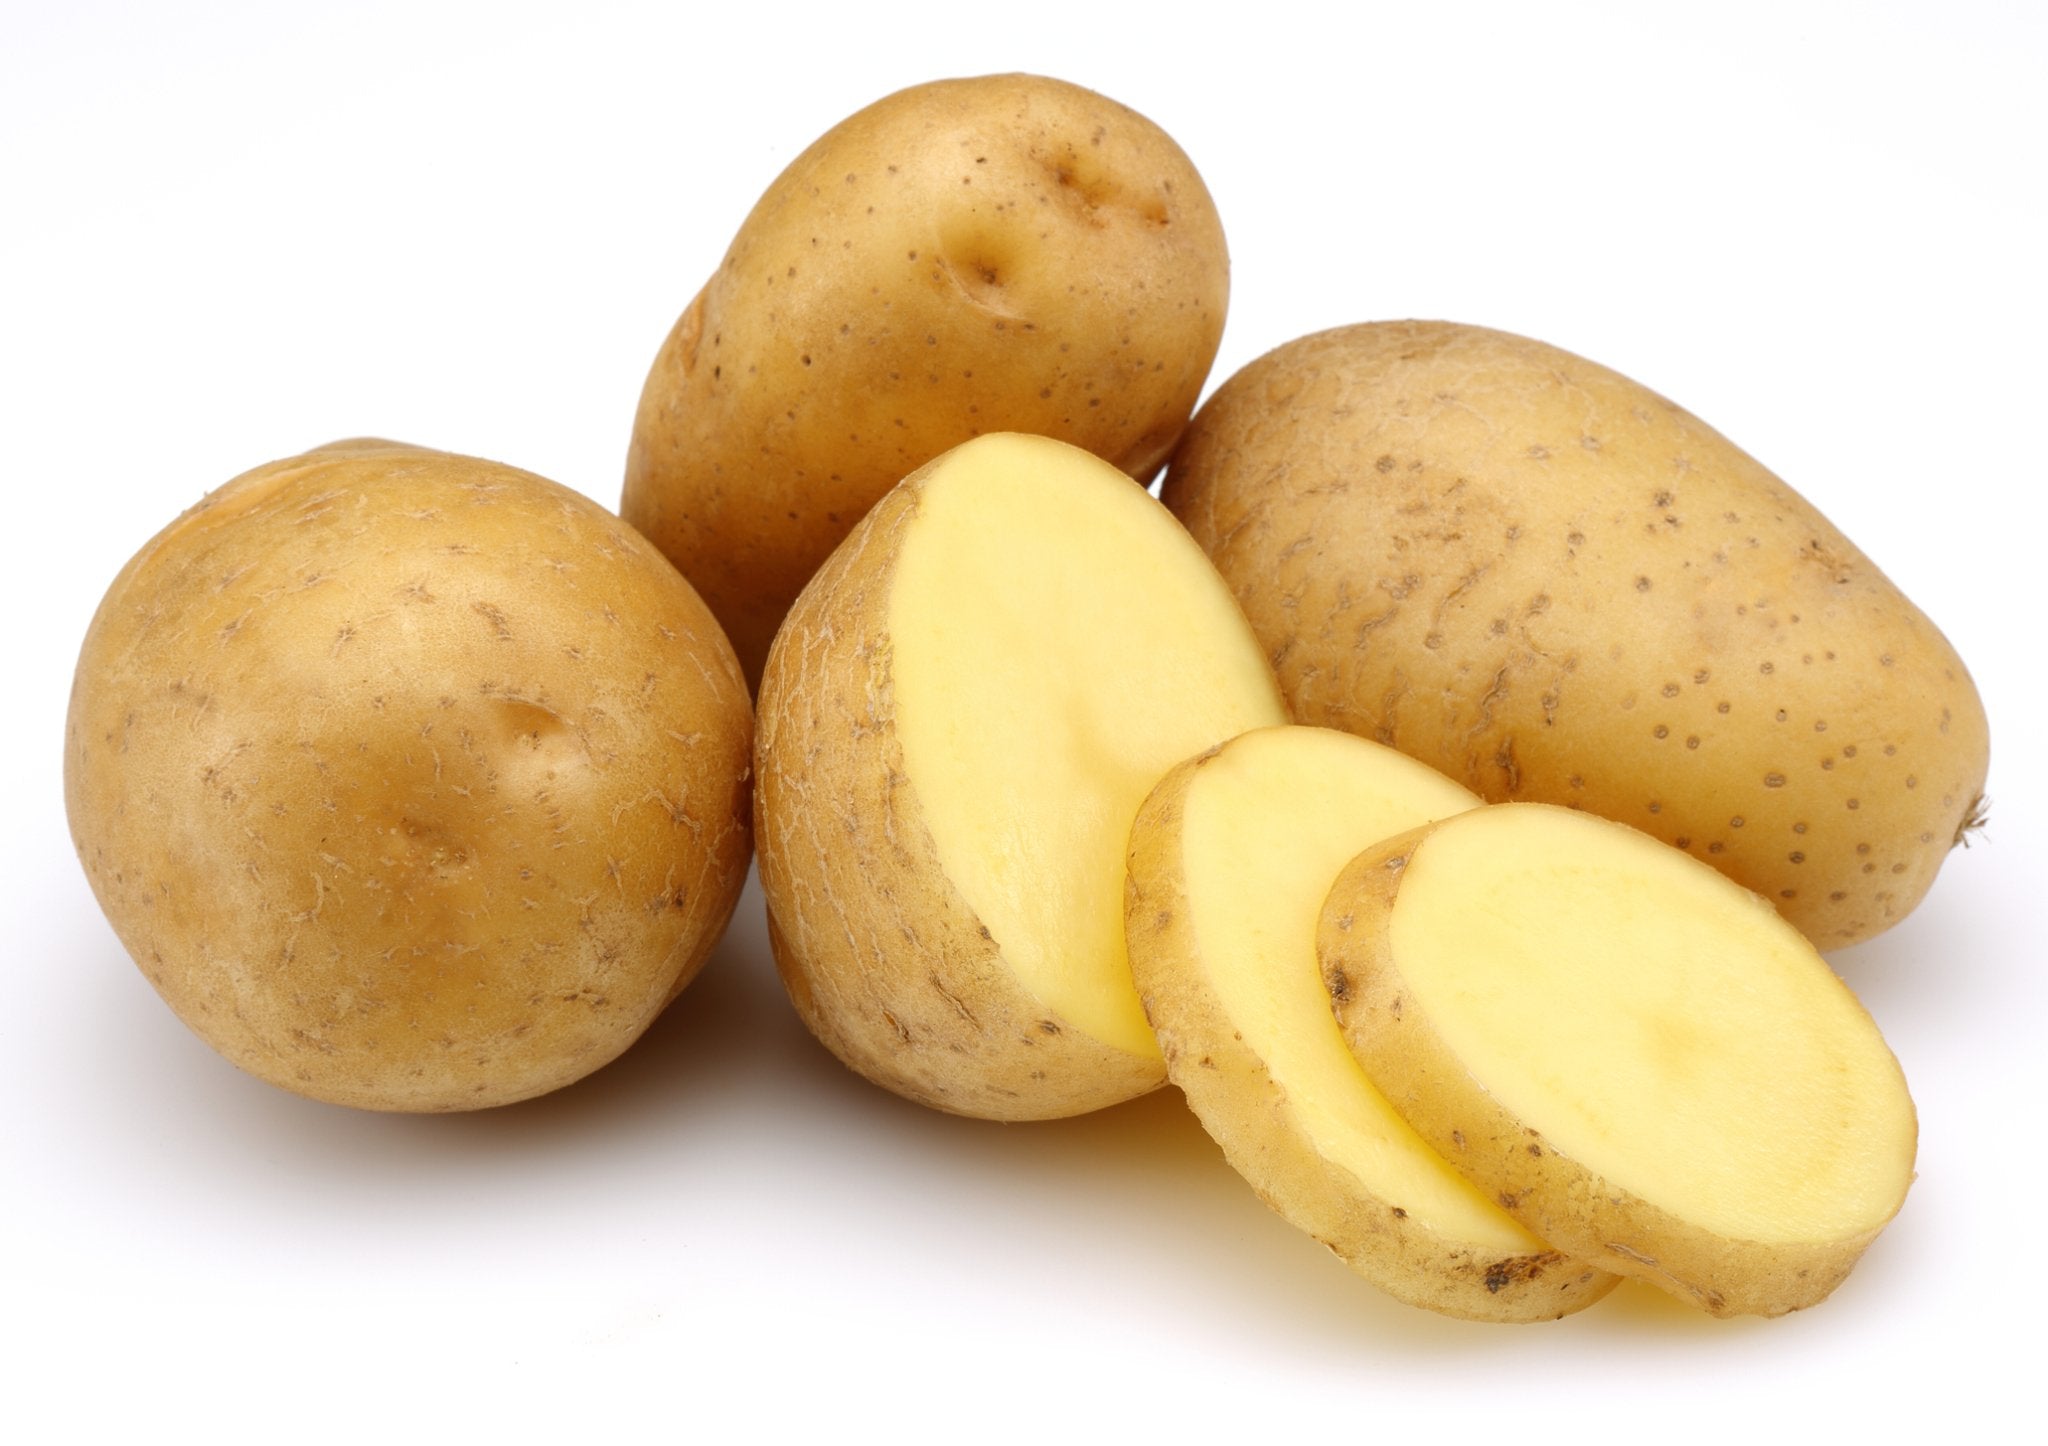 Die Bio-Kartoffeln sind firsch geernet und sehen sehr gesund aus.